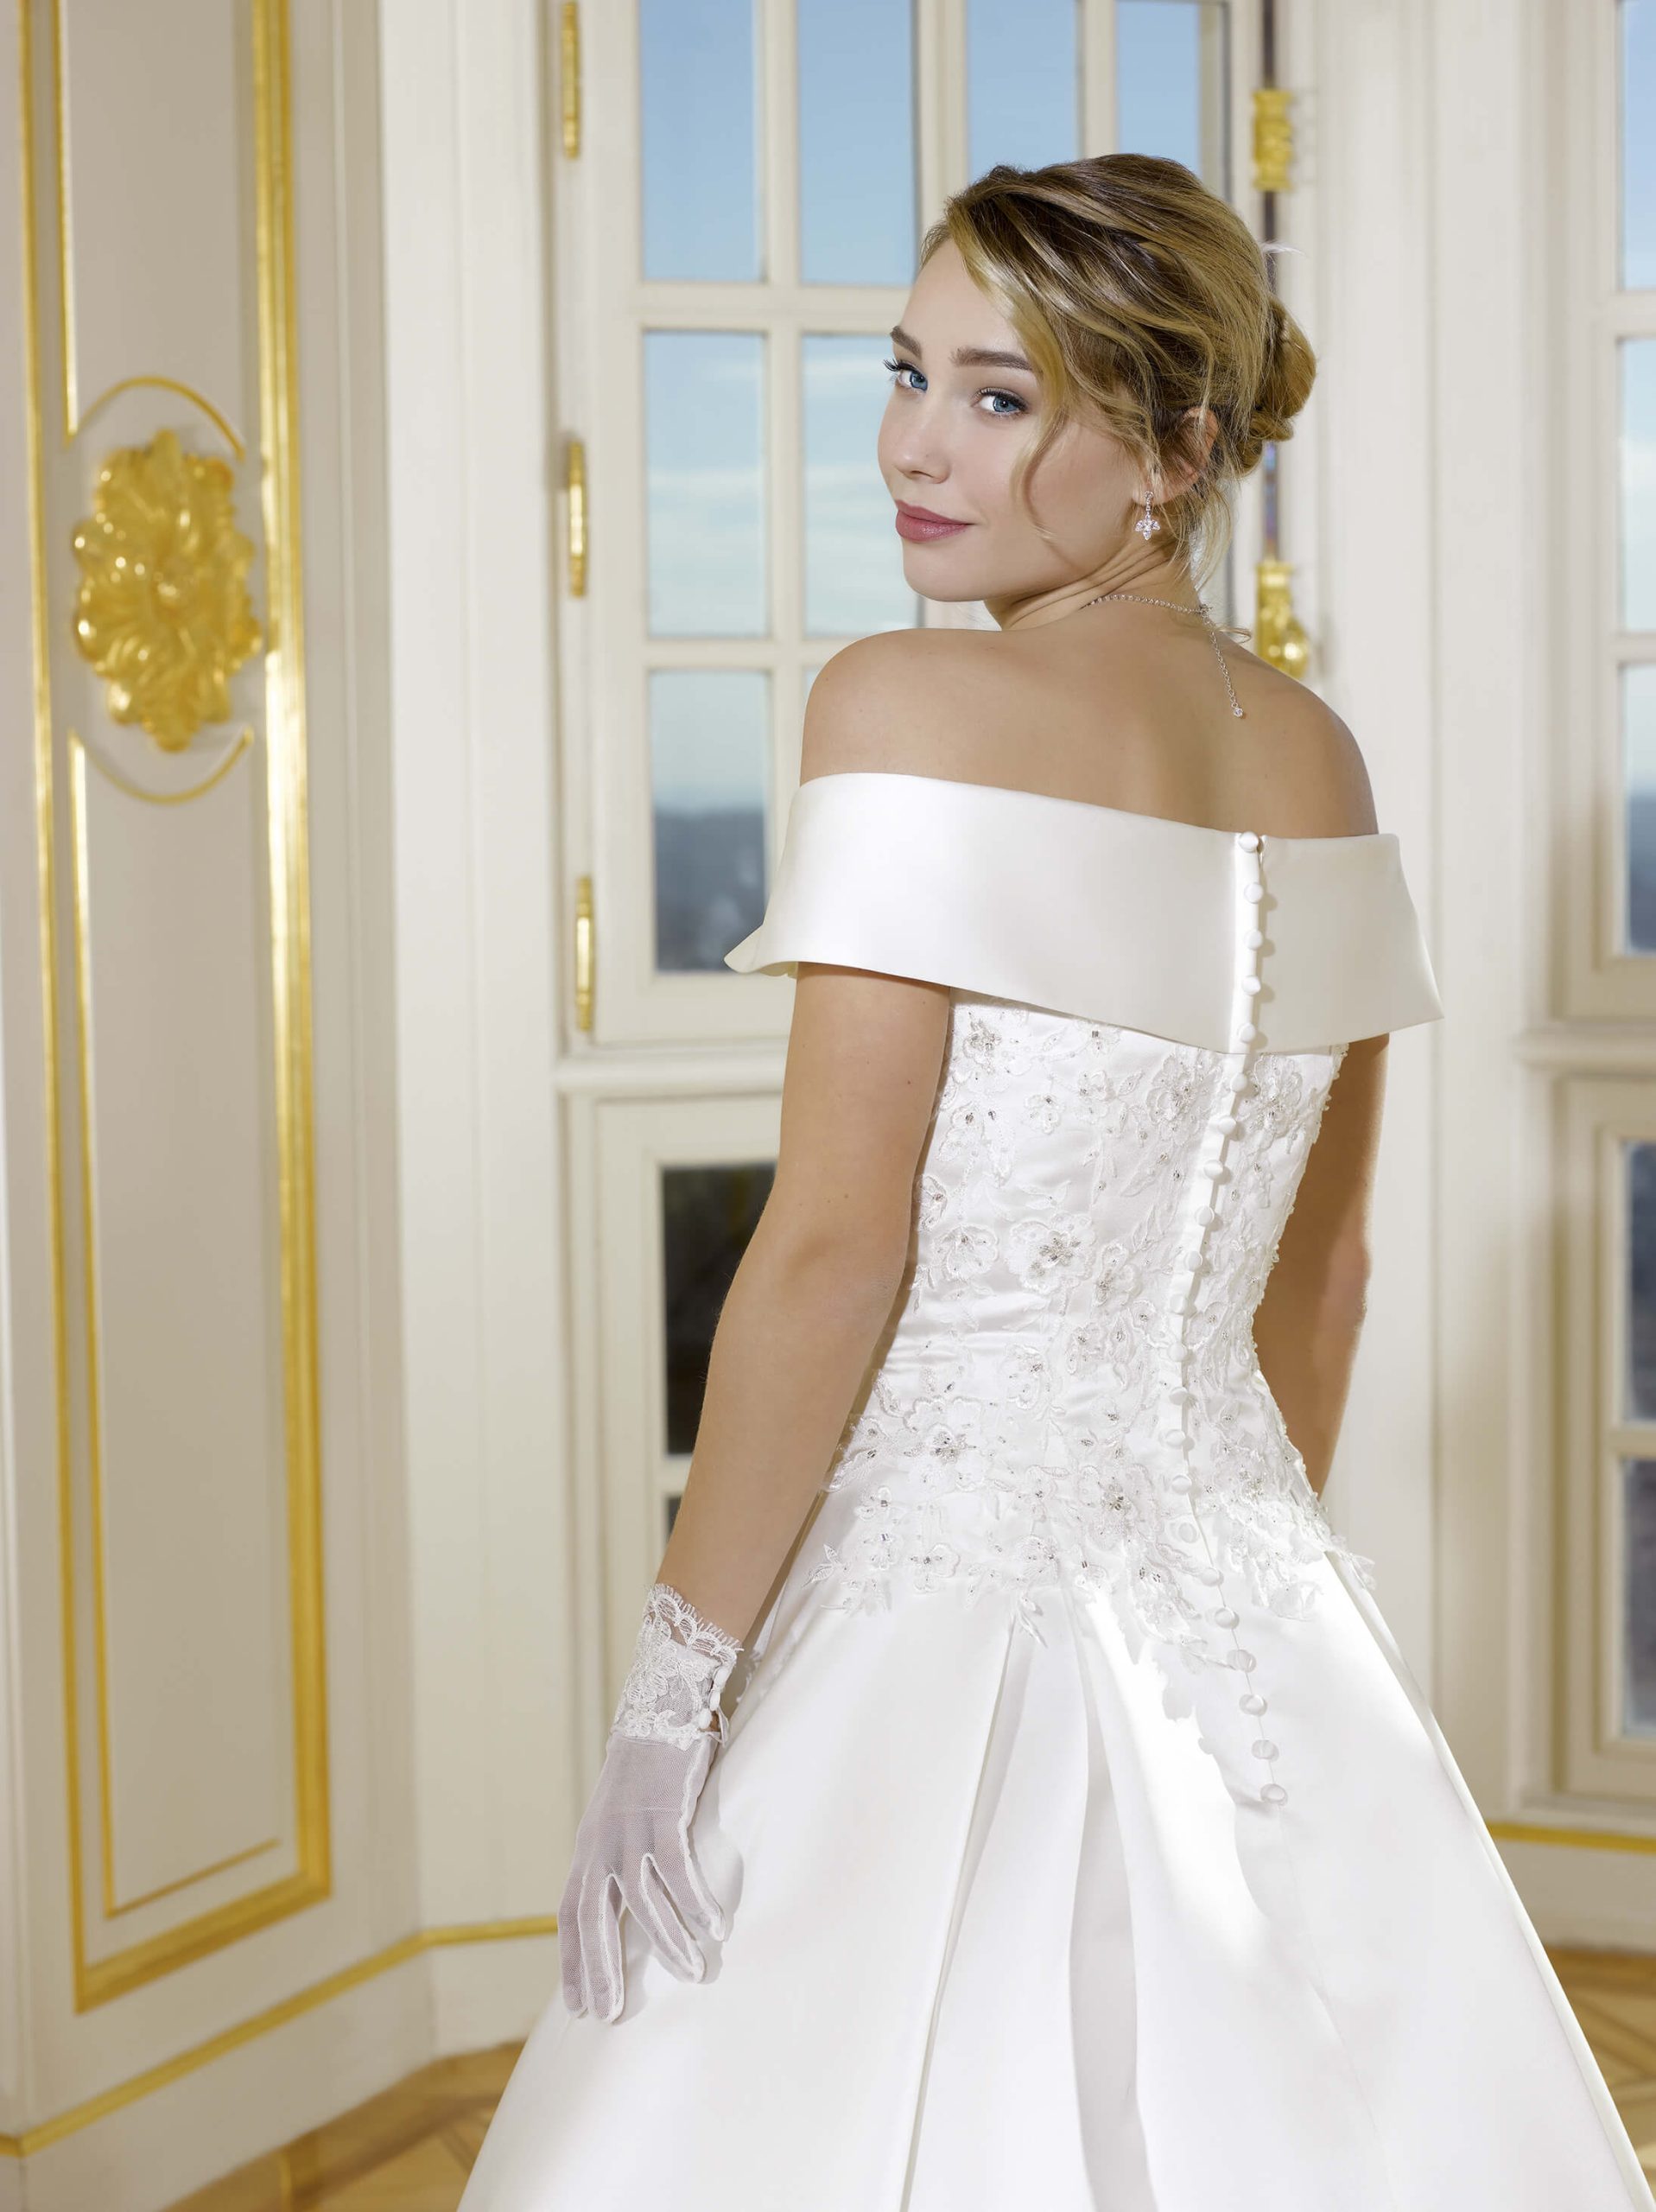 5 critères pour bien choisir sa robe de mariée